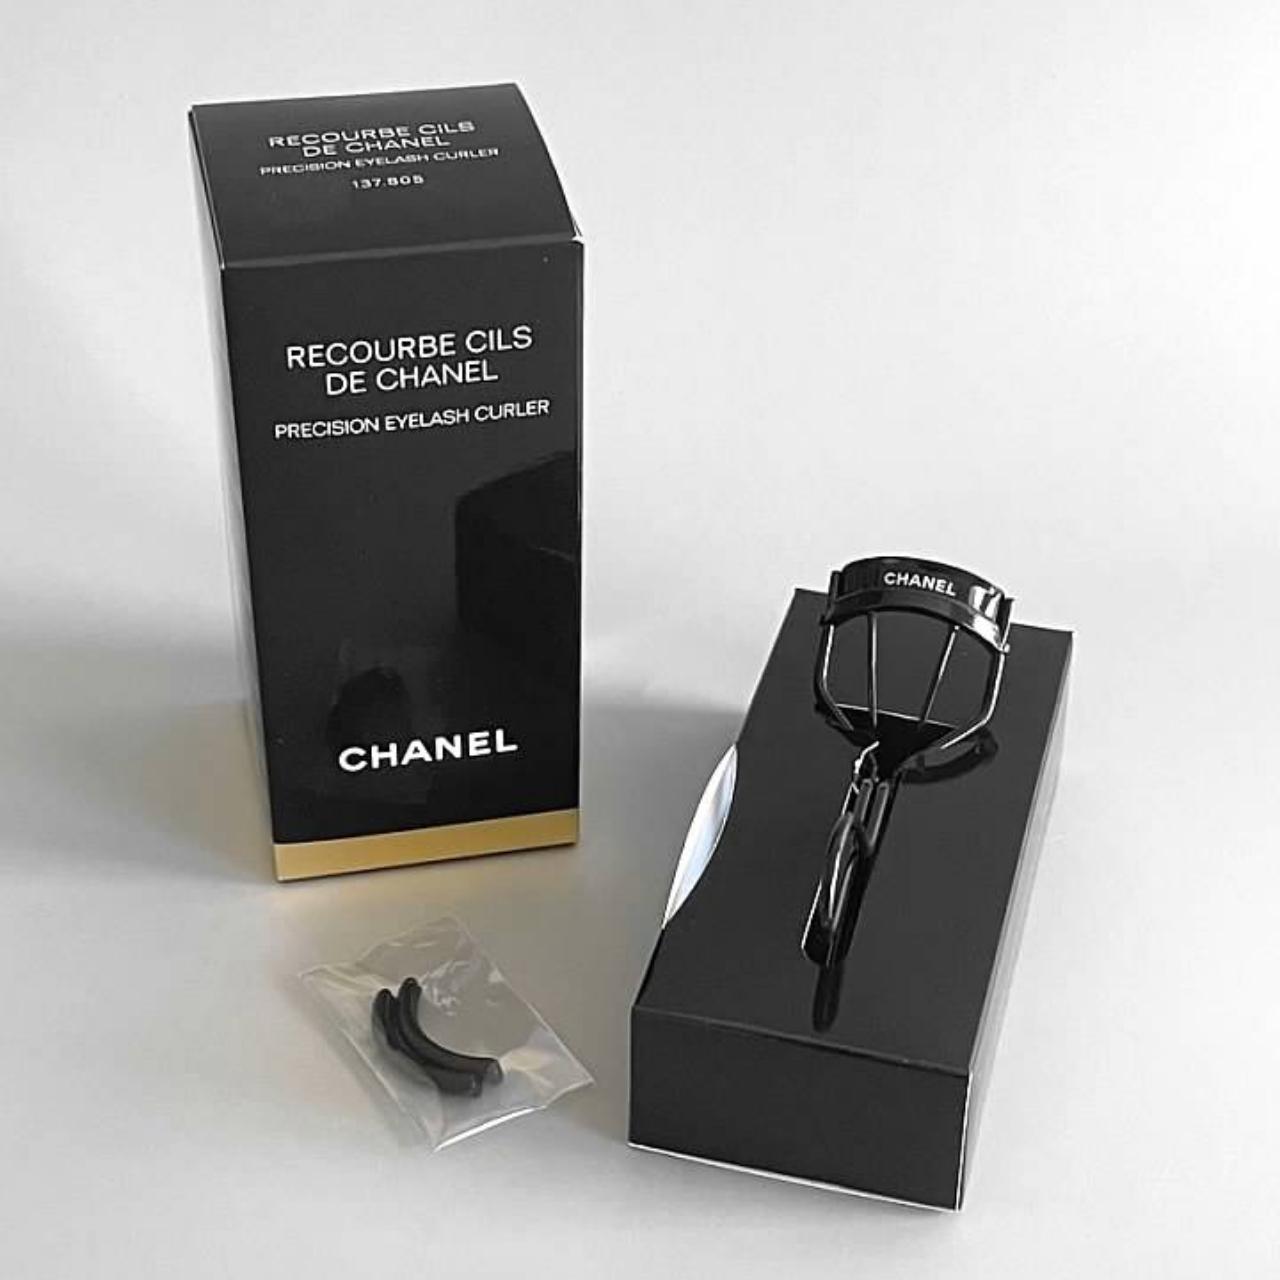 Chanel Recourbe Cils de Chanel Black Eyelash Curler - Depop